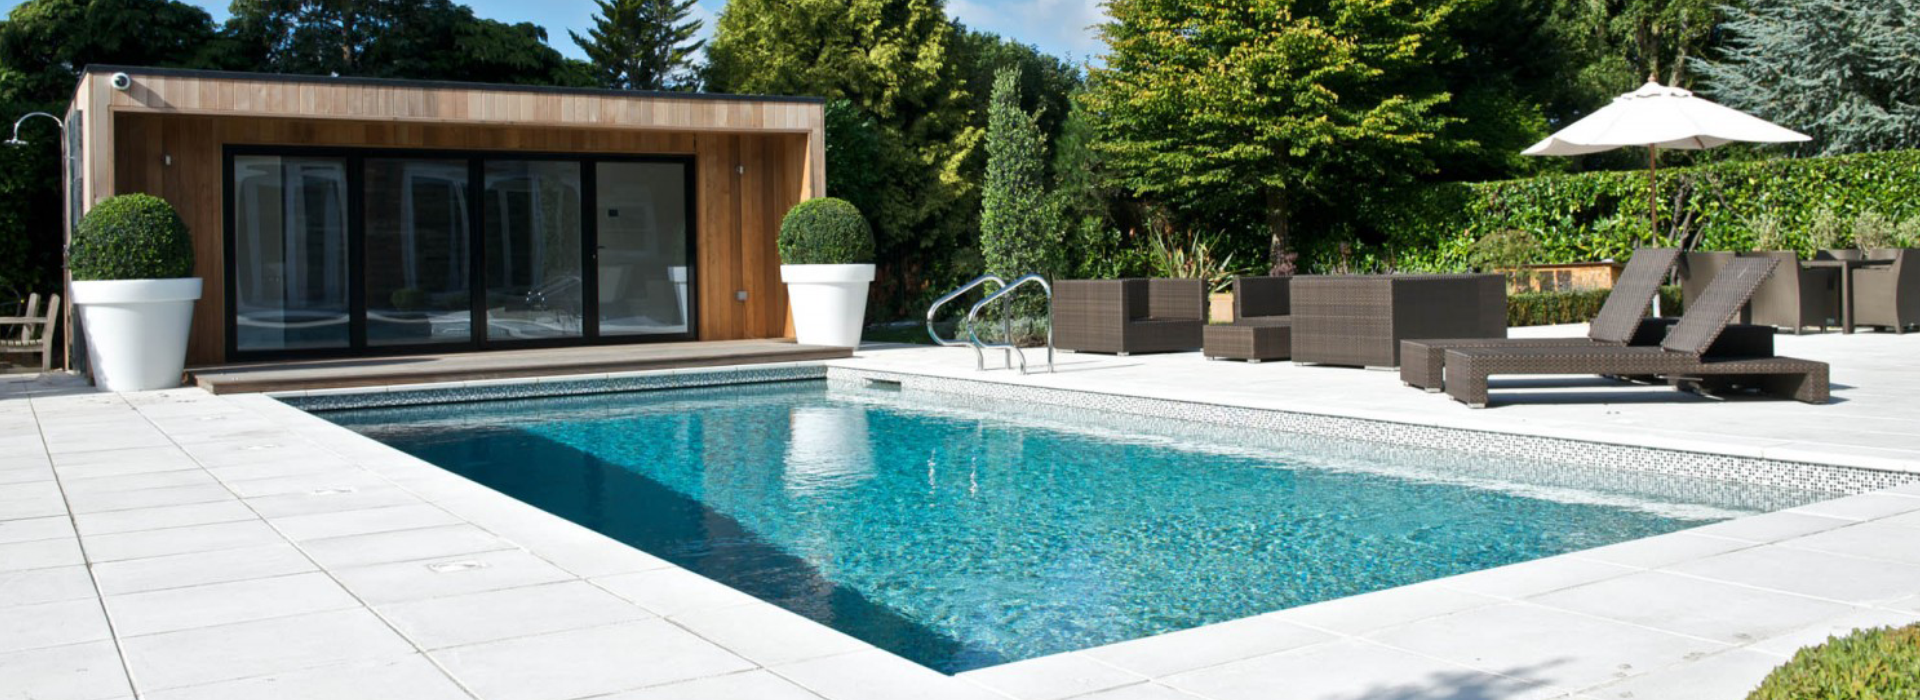 Bespoke outdoor pool design